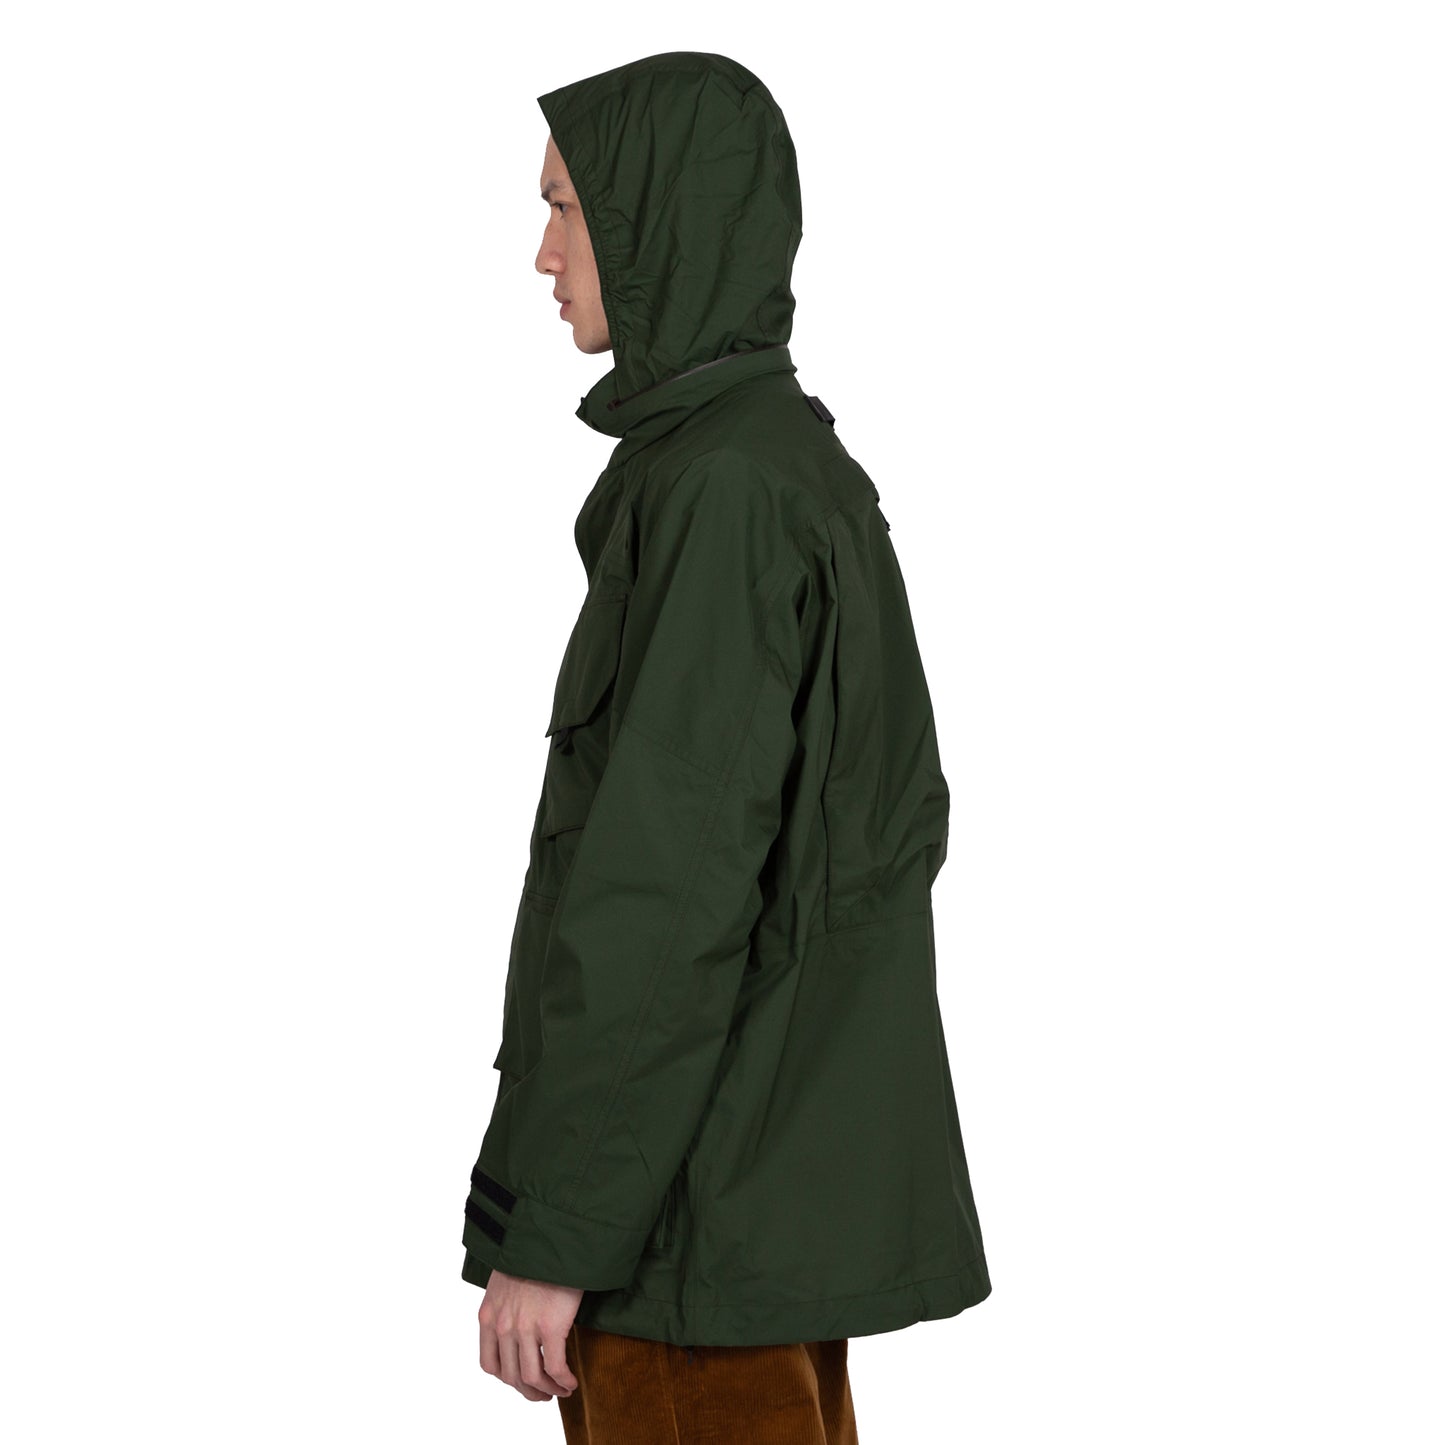 Goldwin Traveler Blouson in Cypress Green Outerwear sportwear hooded hood rain gear all weather